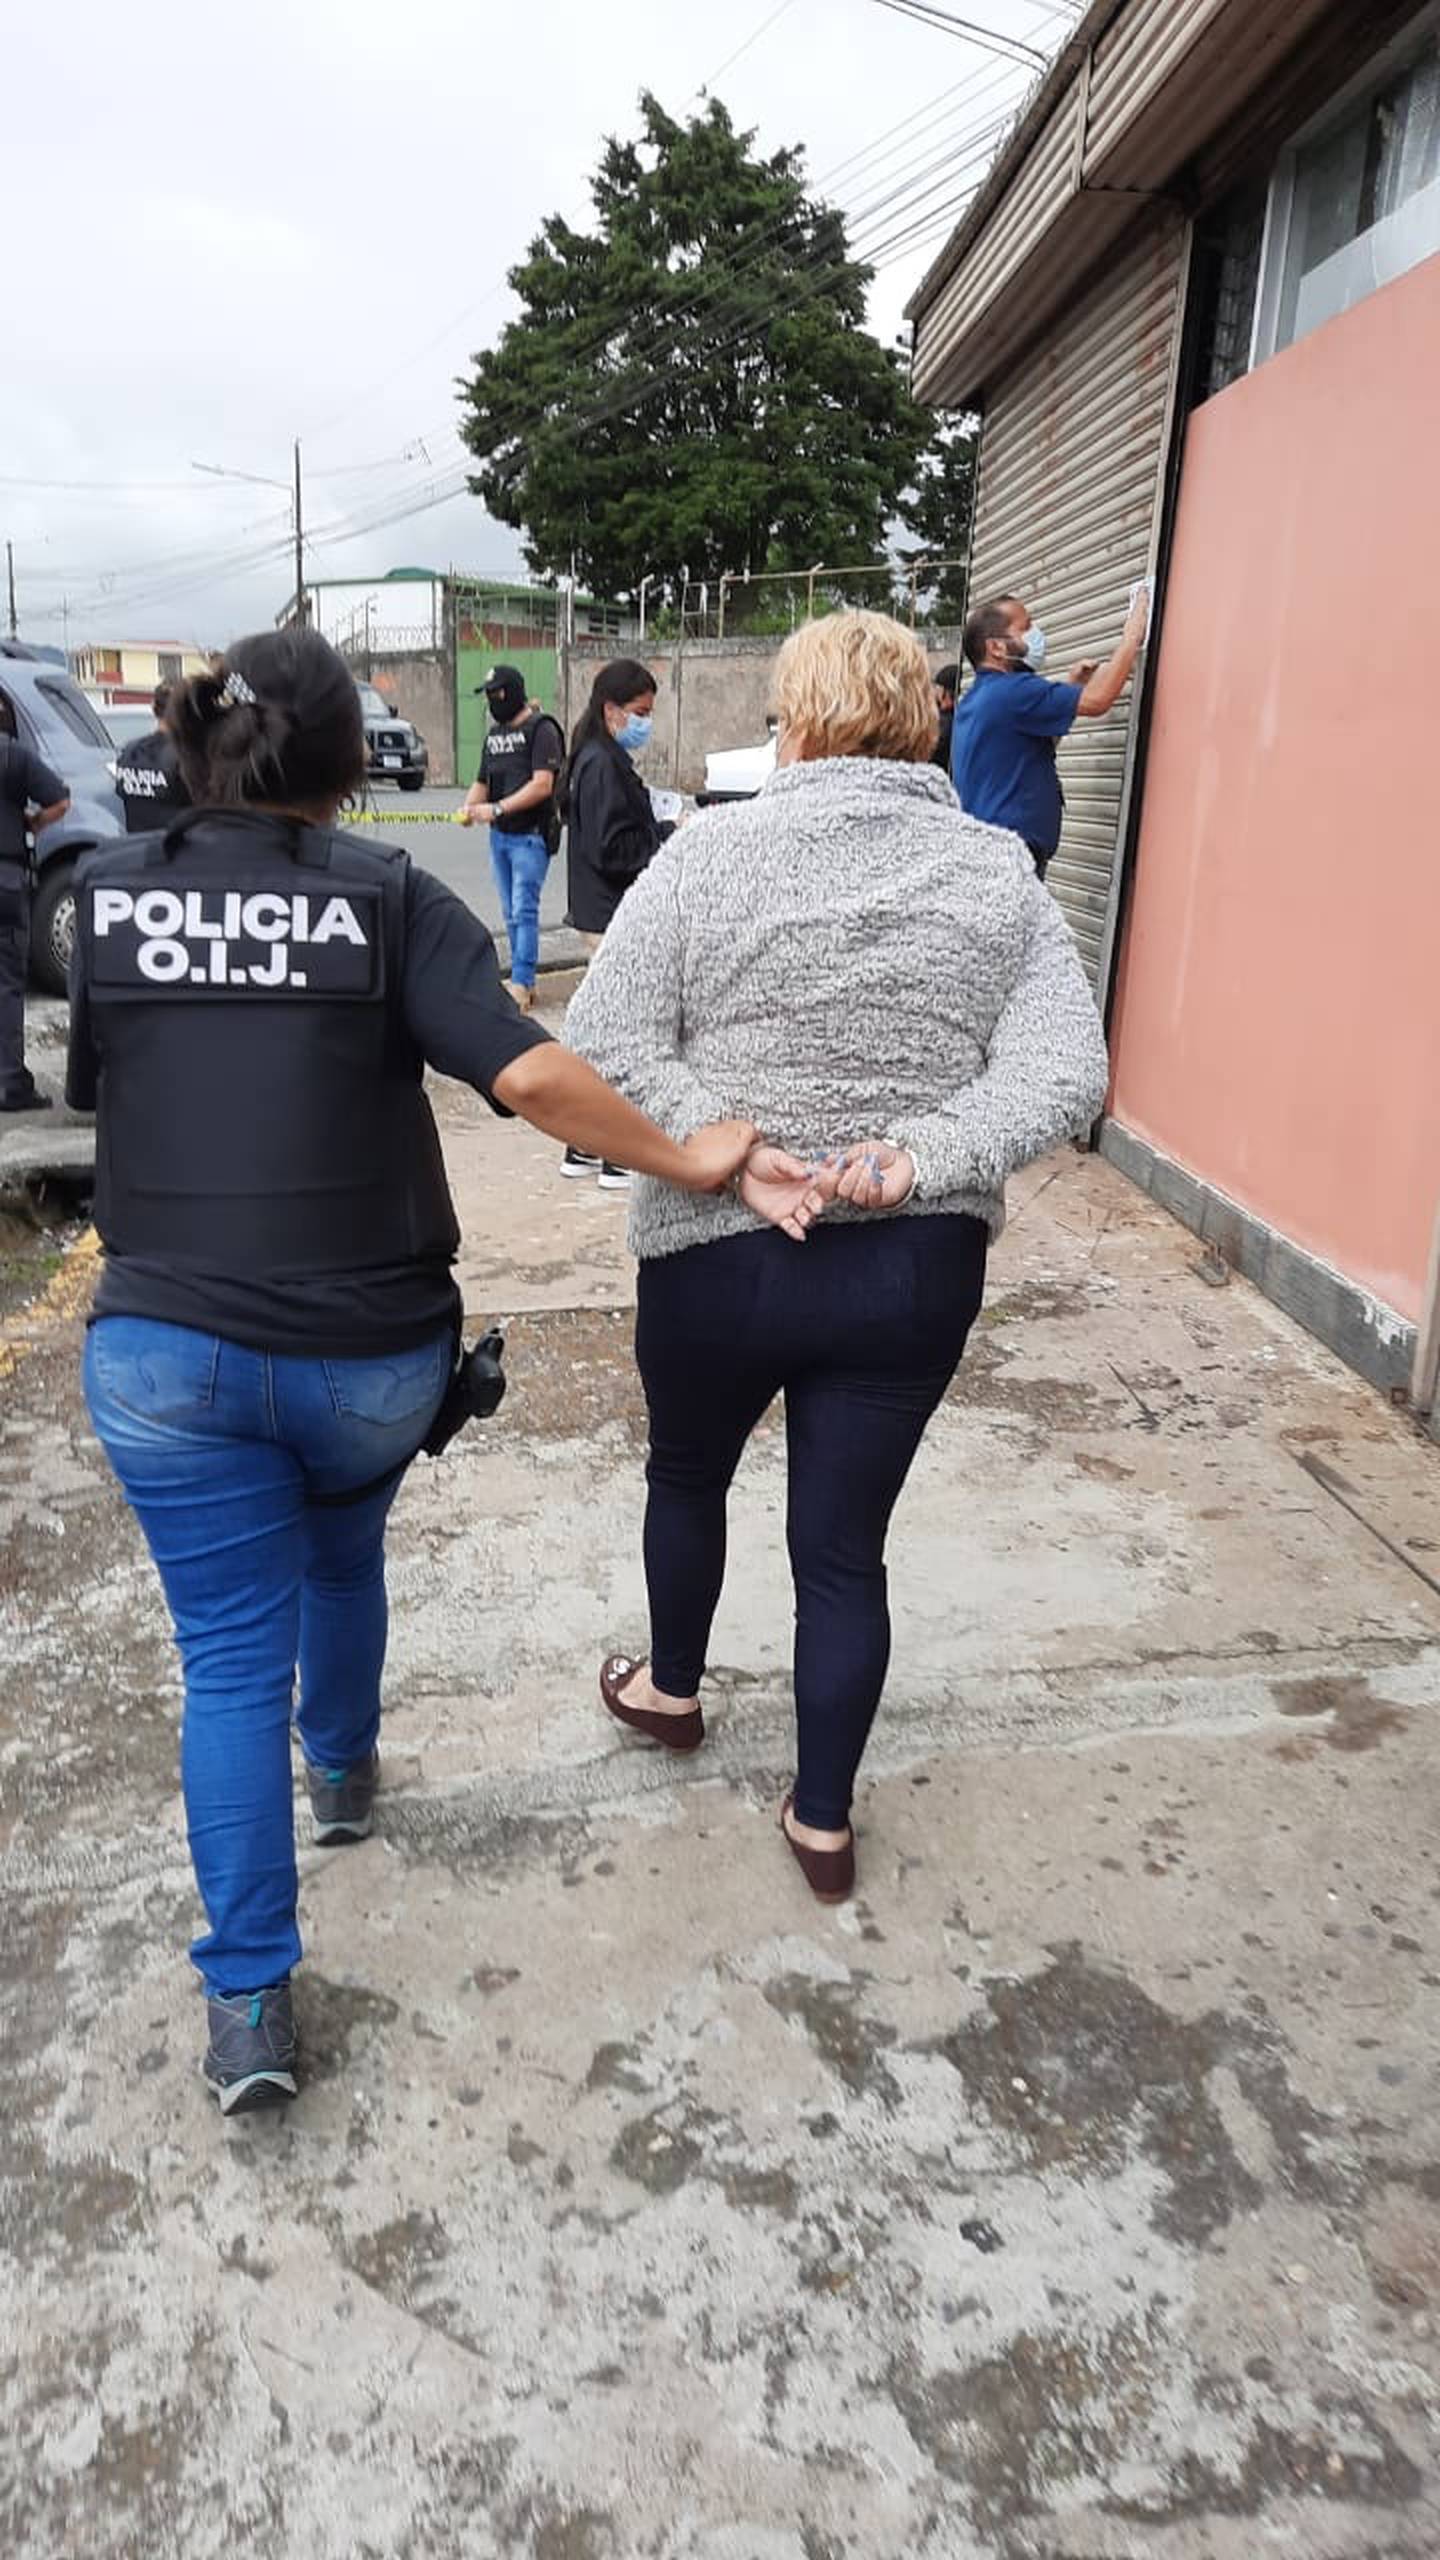 Mujer apellidada Acuña es detenida por el OIJ en Cartago como sospechosa de proxenetismo de mujeres. Foto OIJ.